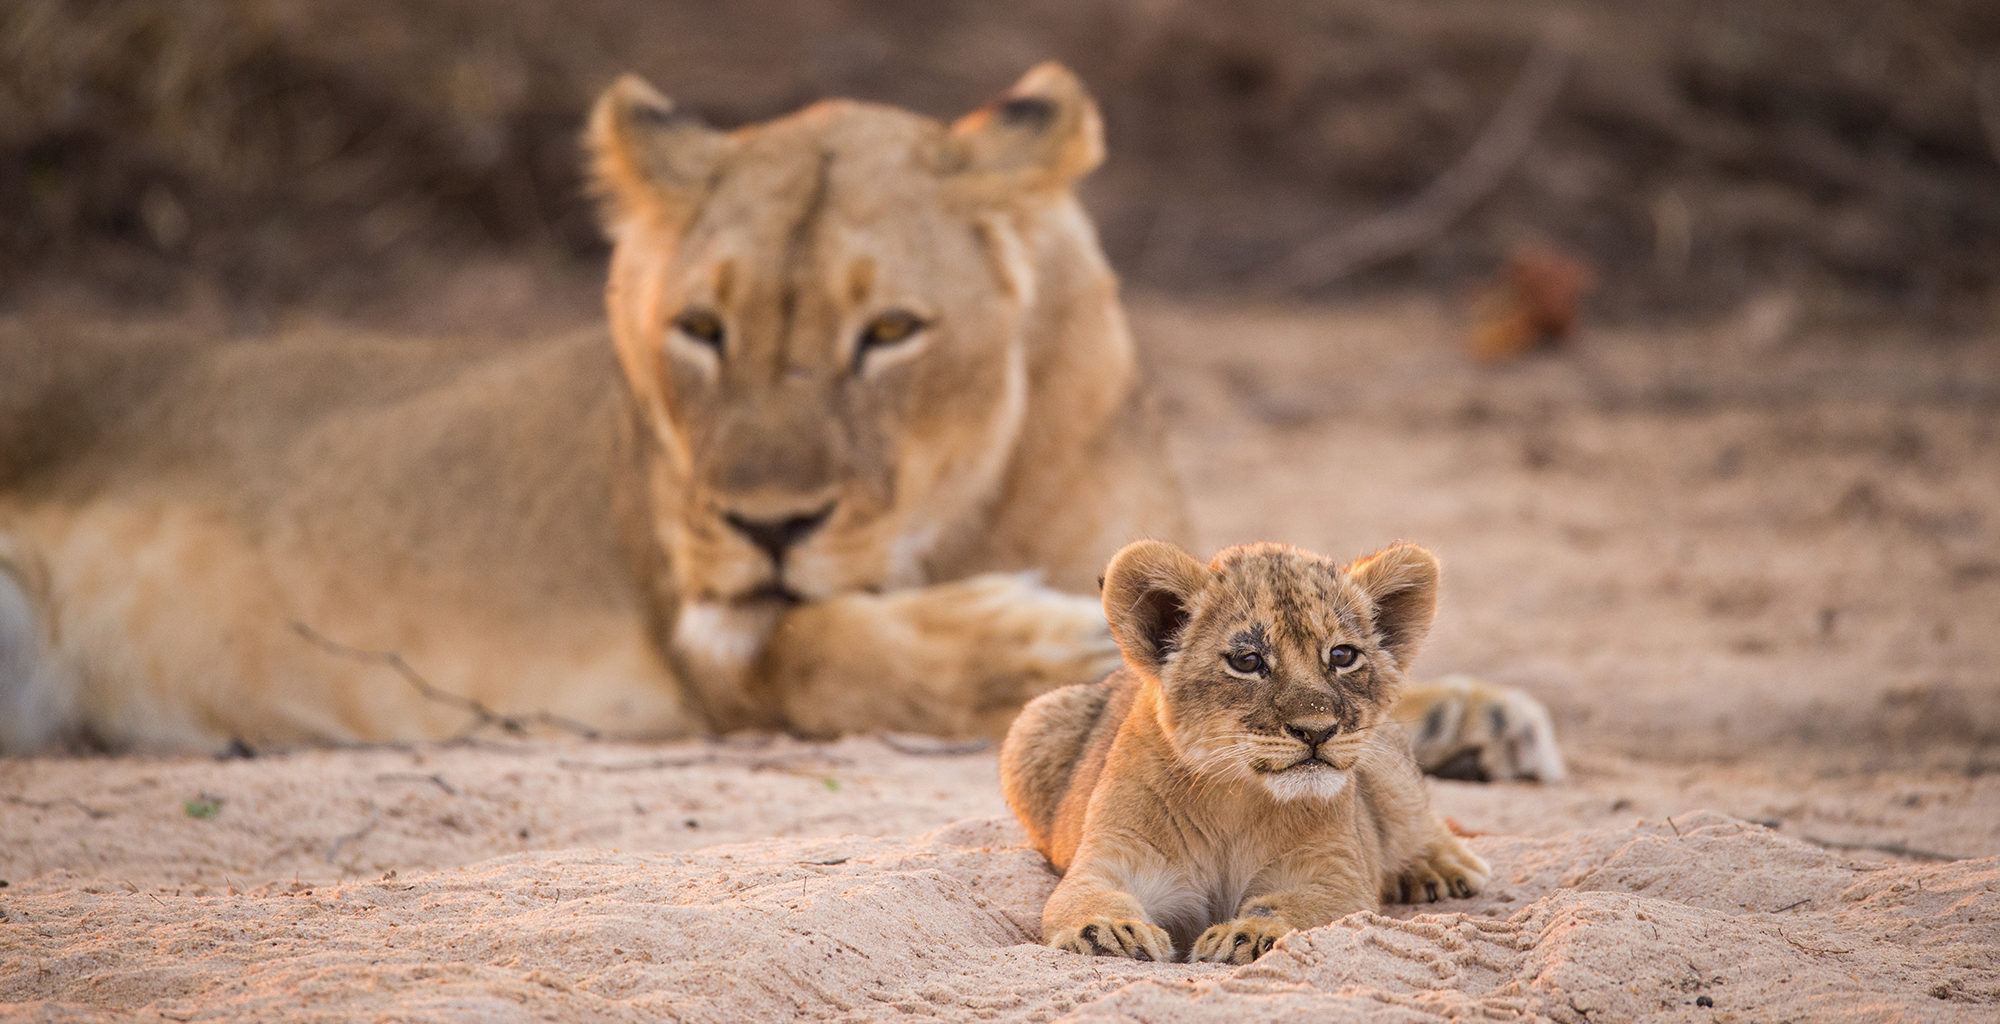 Zimbabwe-Chikwenya-Wildlife-Lion-Cub